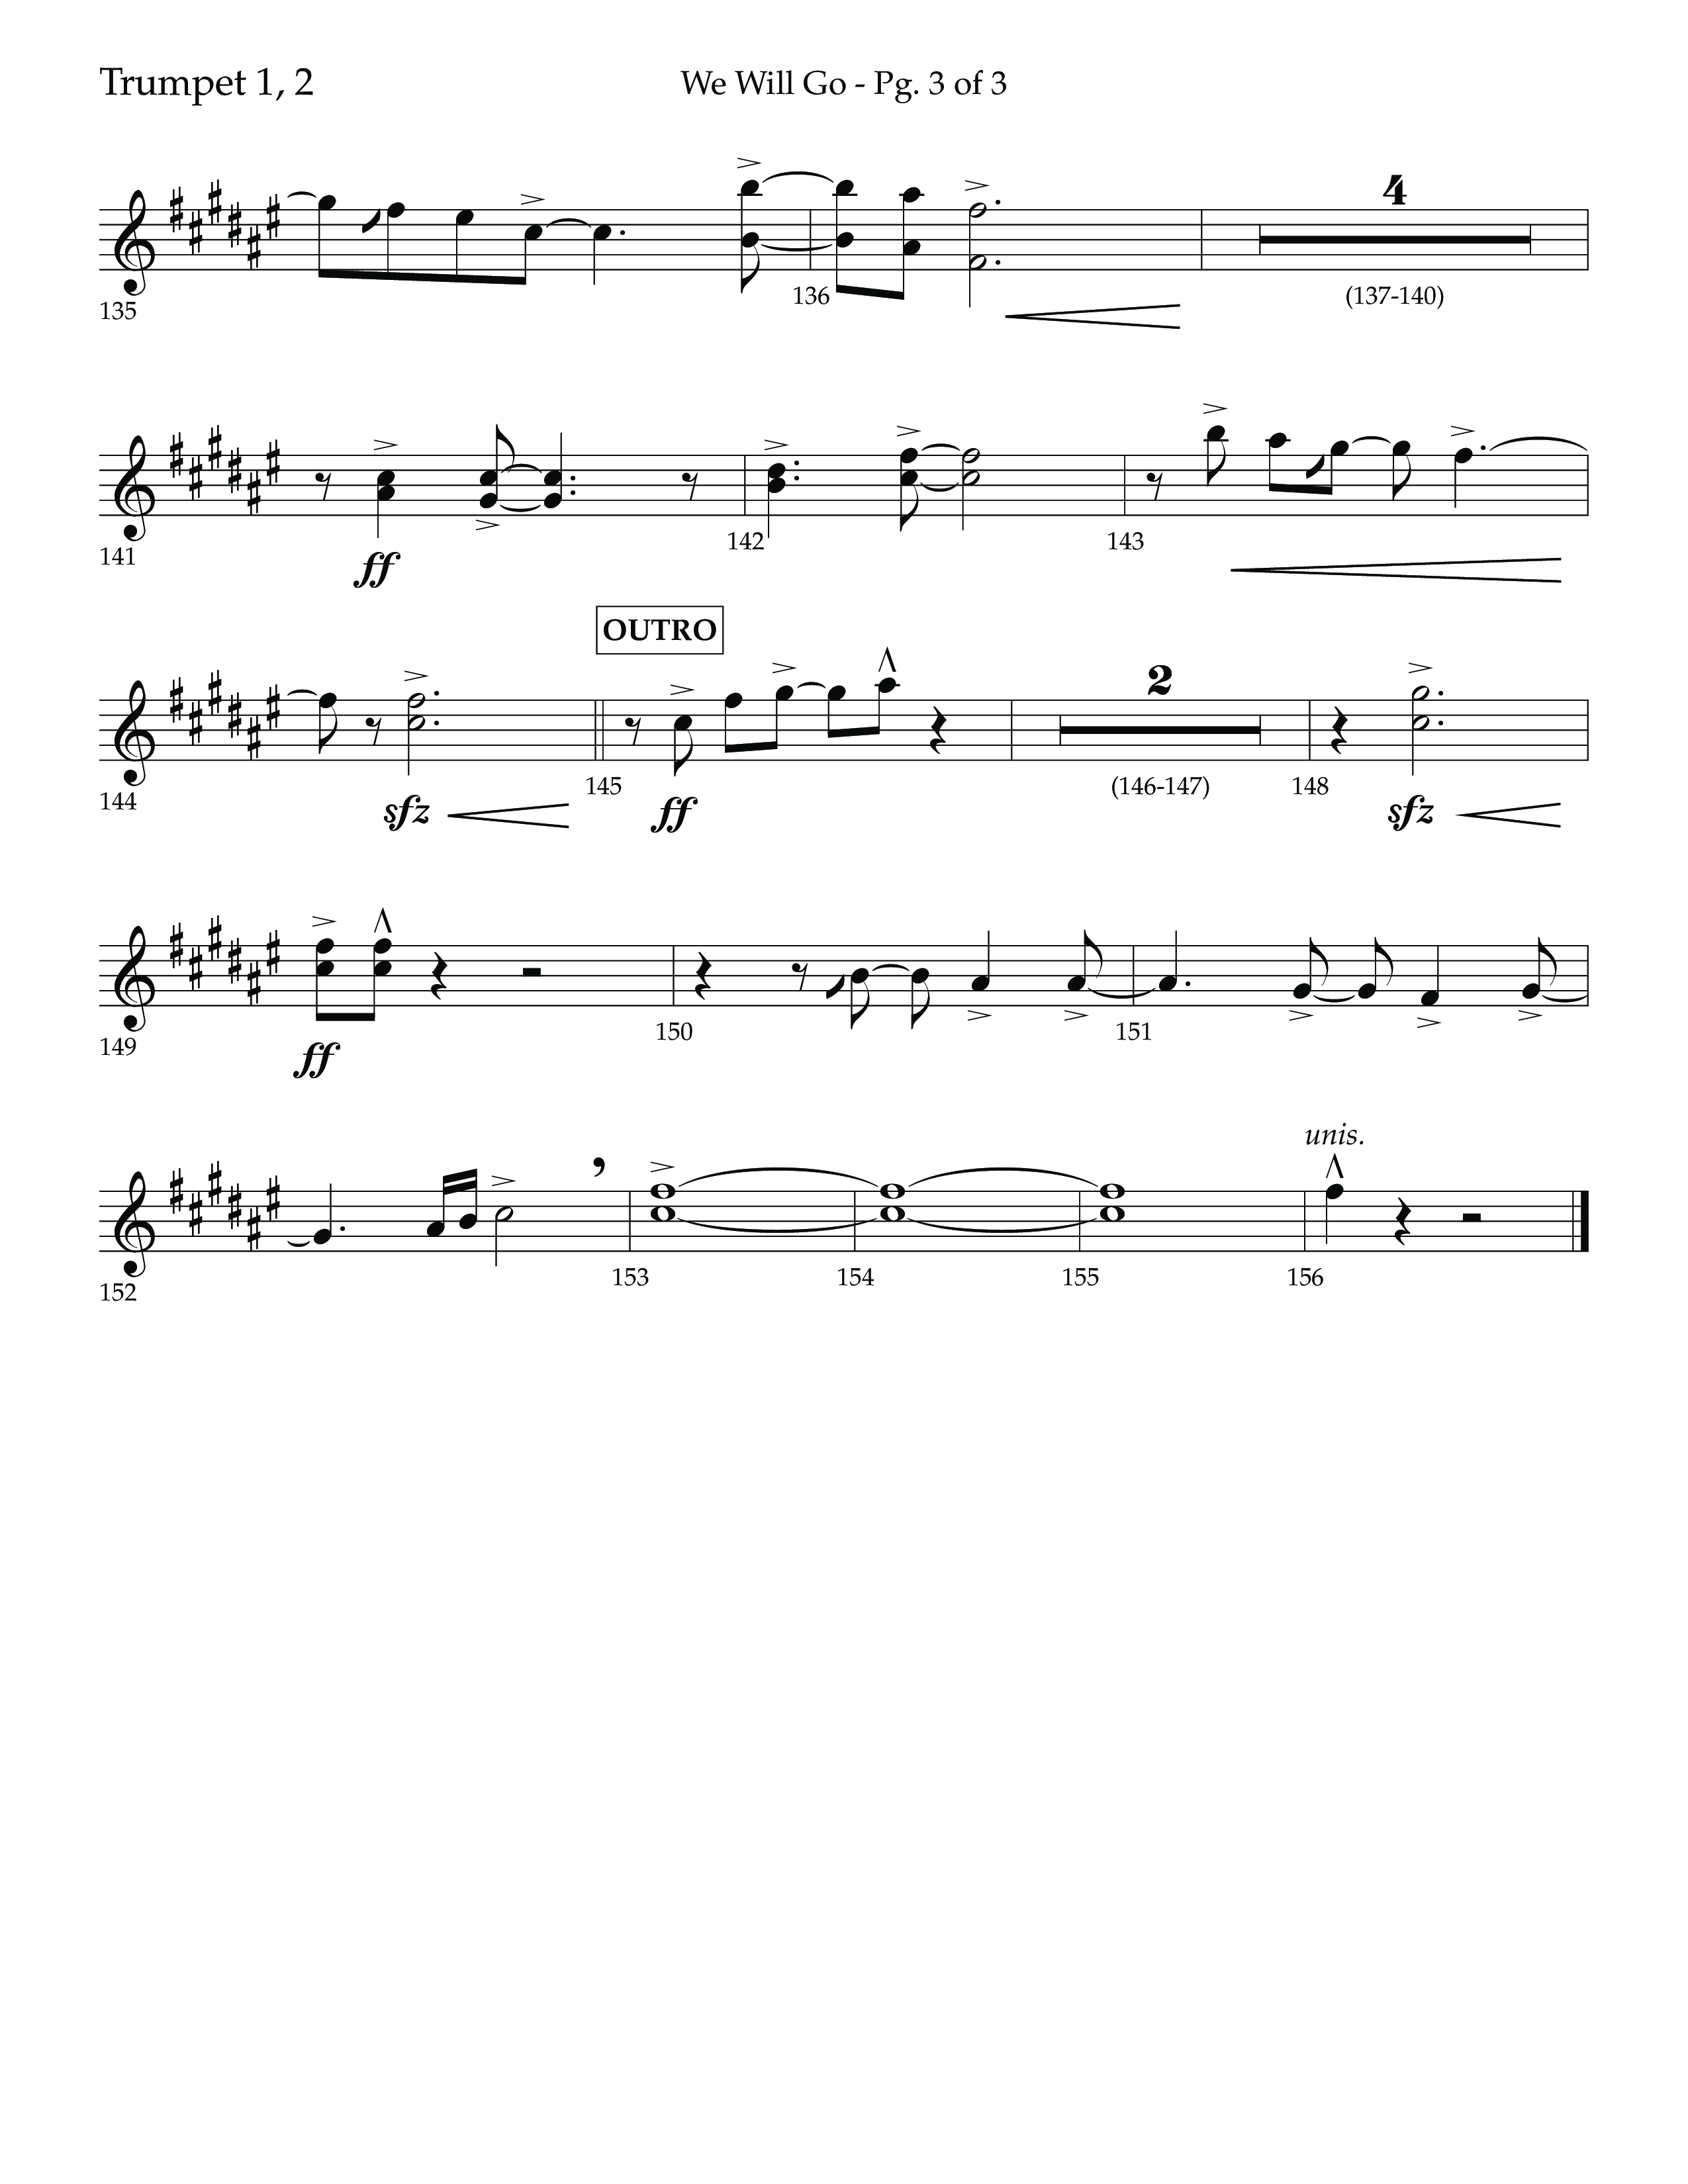 We Will Go (Choral Anthem SATB) Trumpet 1,2 (Lifeway Choral / Arr. Cliff Duren)